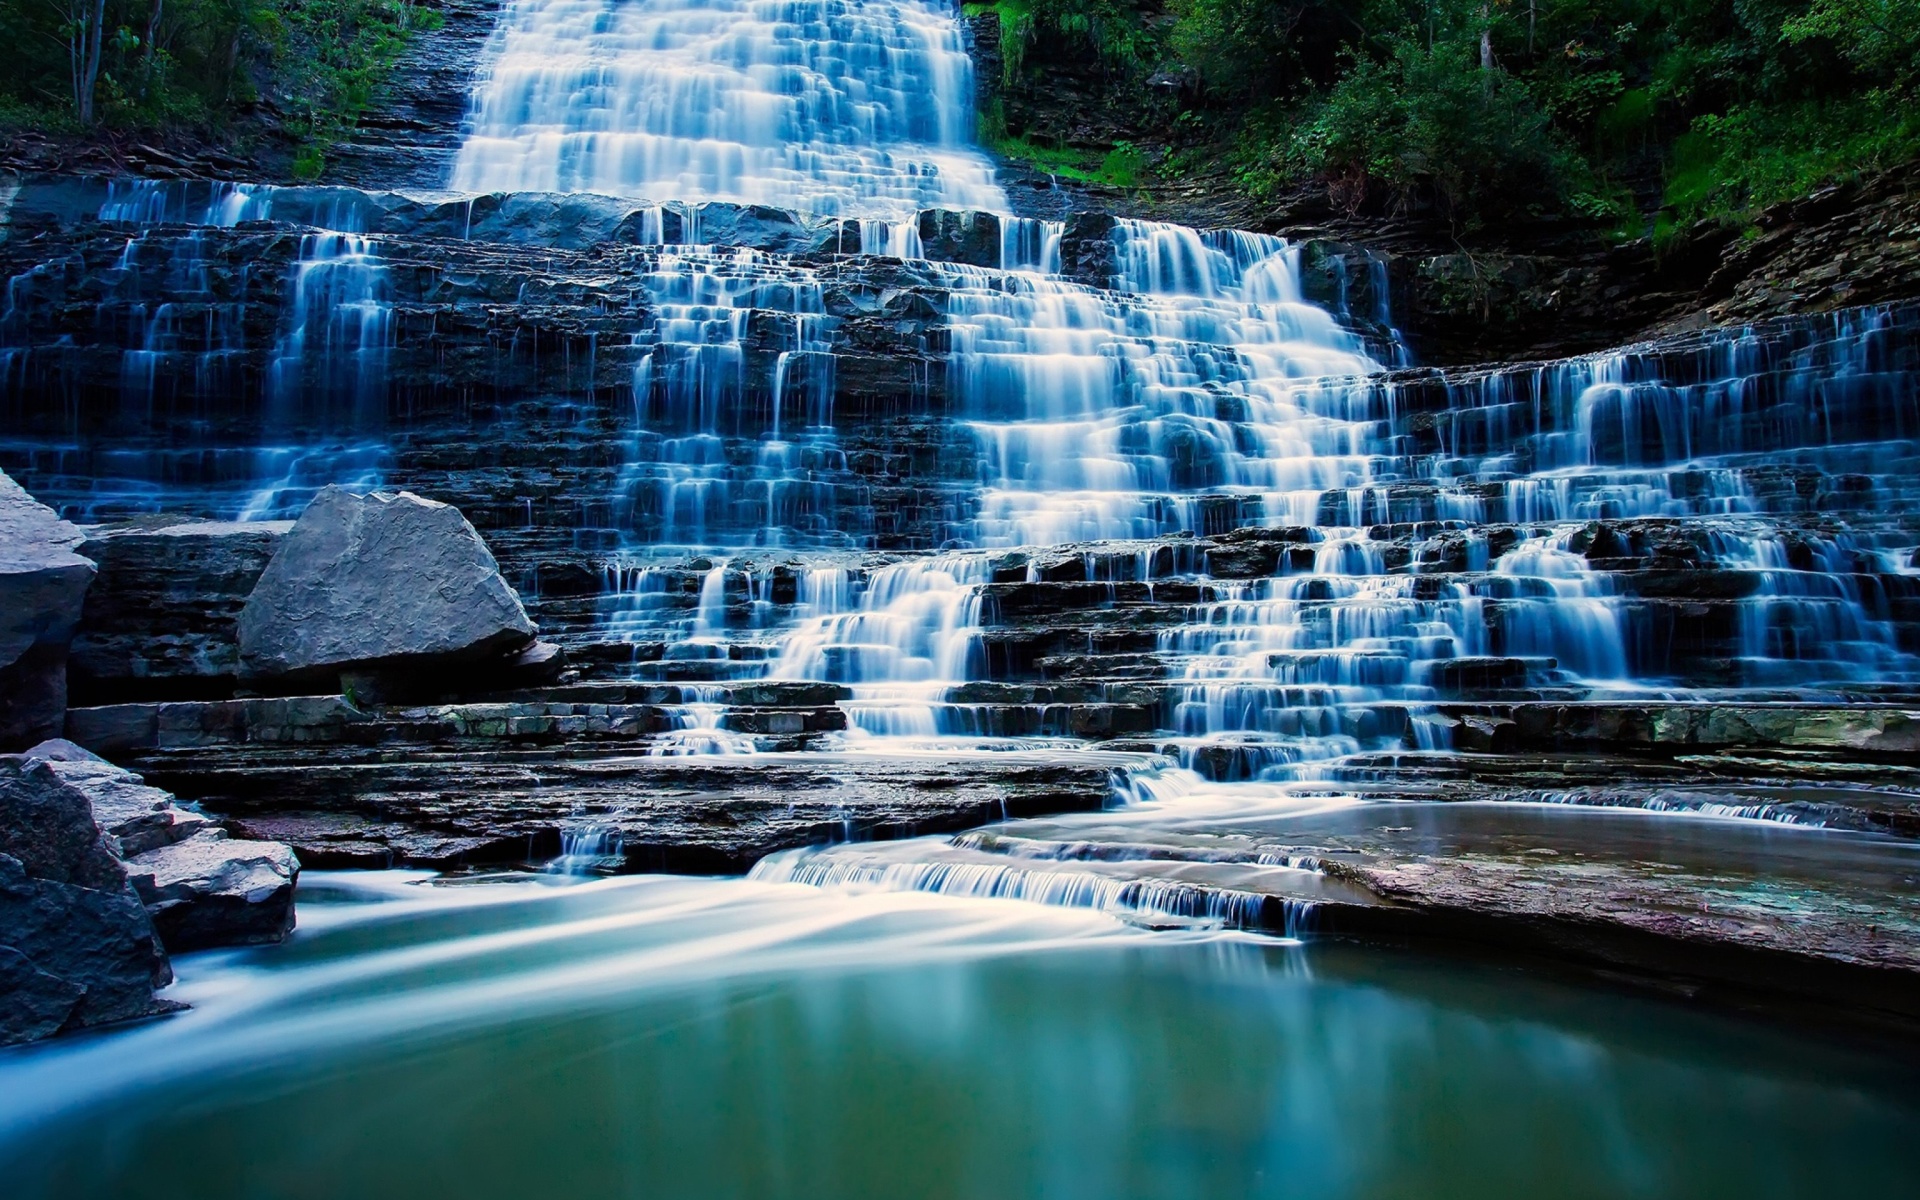 Das Albion Falls cascade waterfall in Hamilton, Ontario, Canada Wallpaper 1920x1200